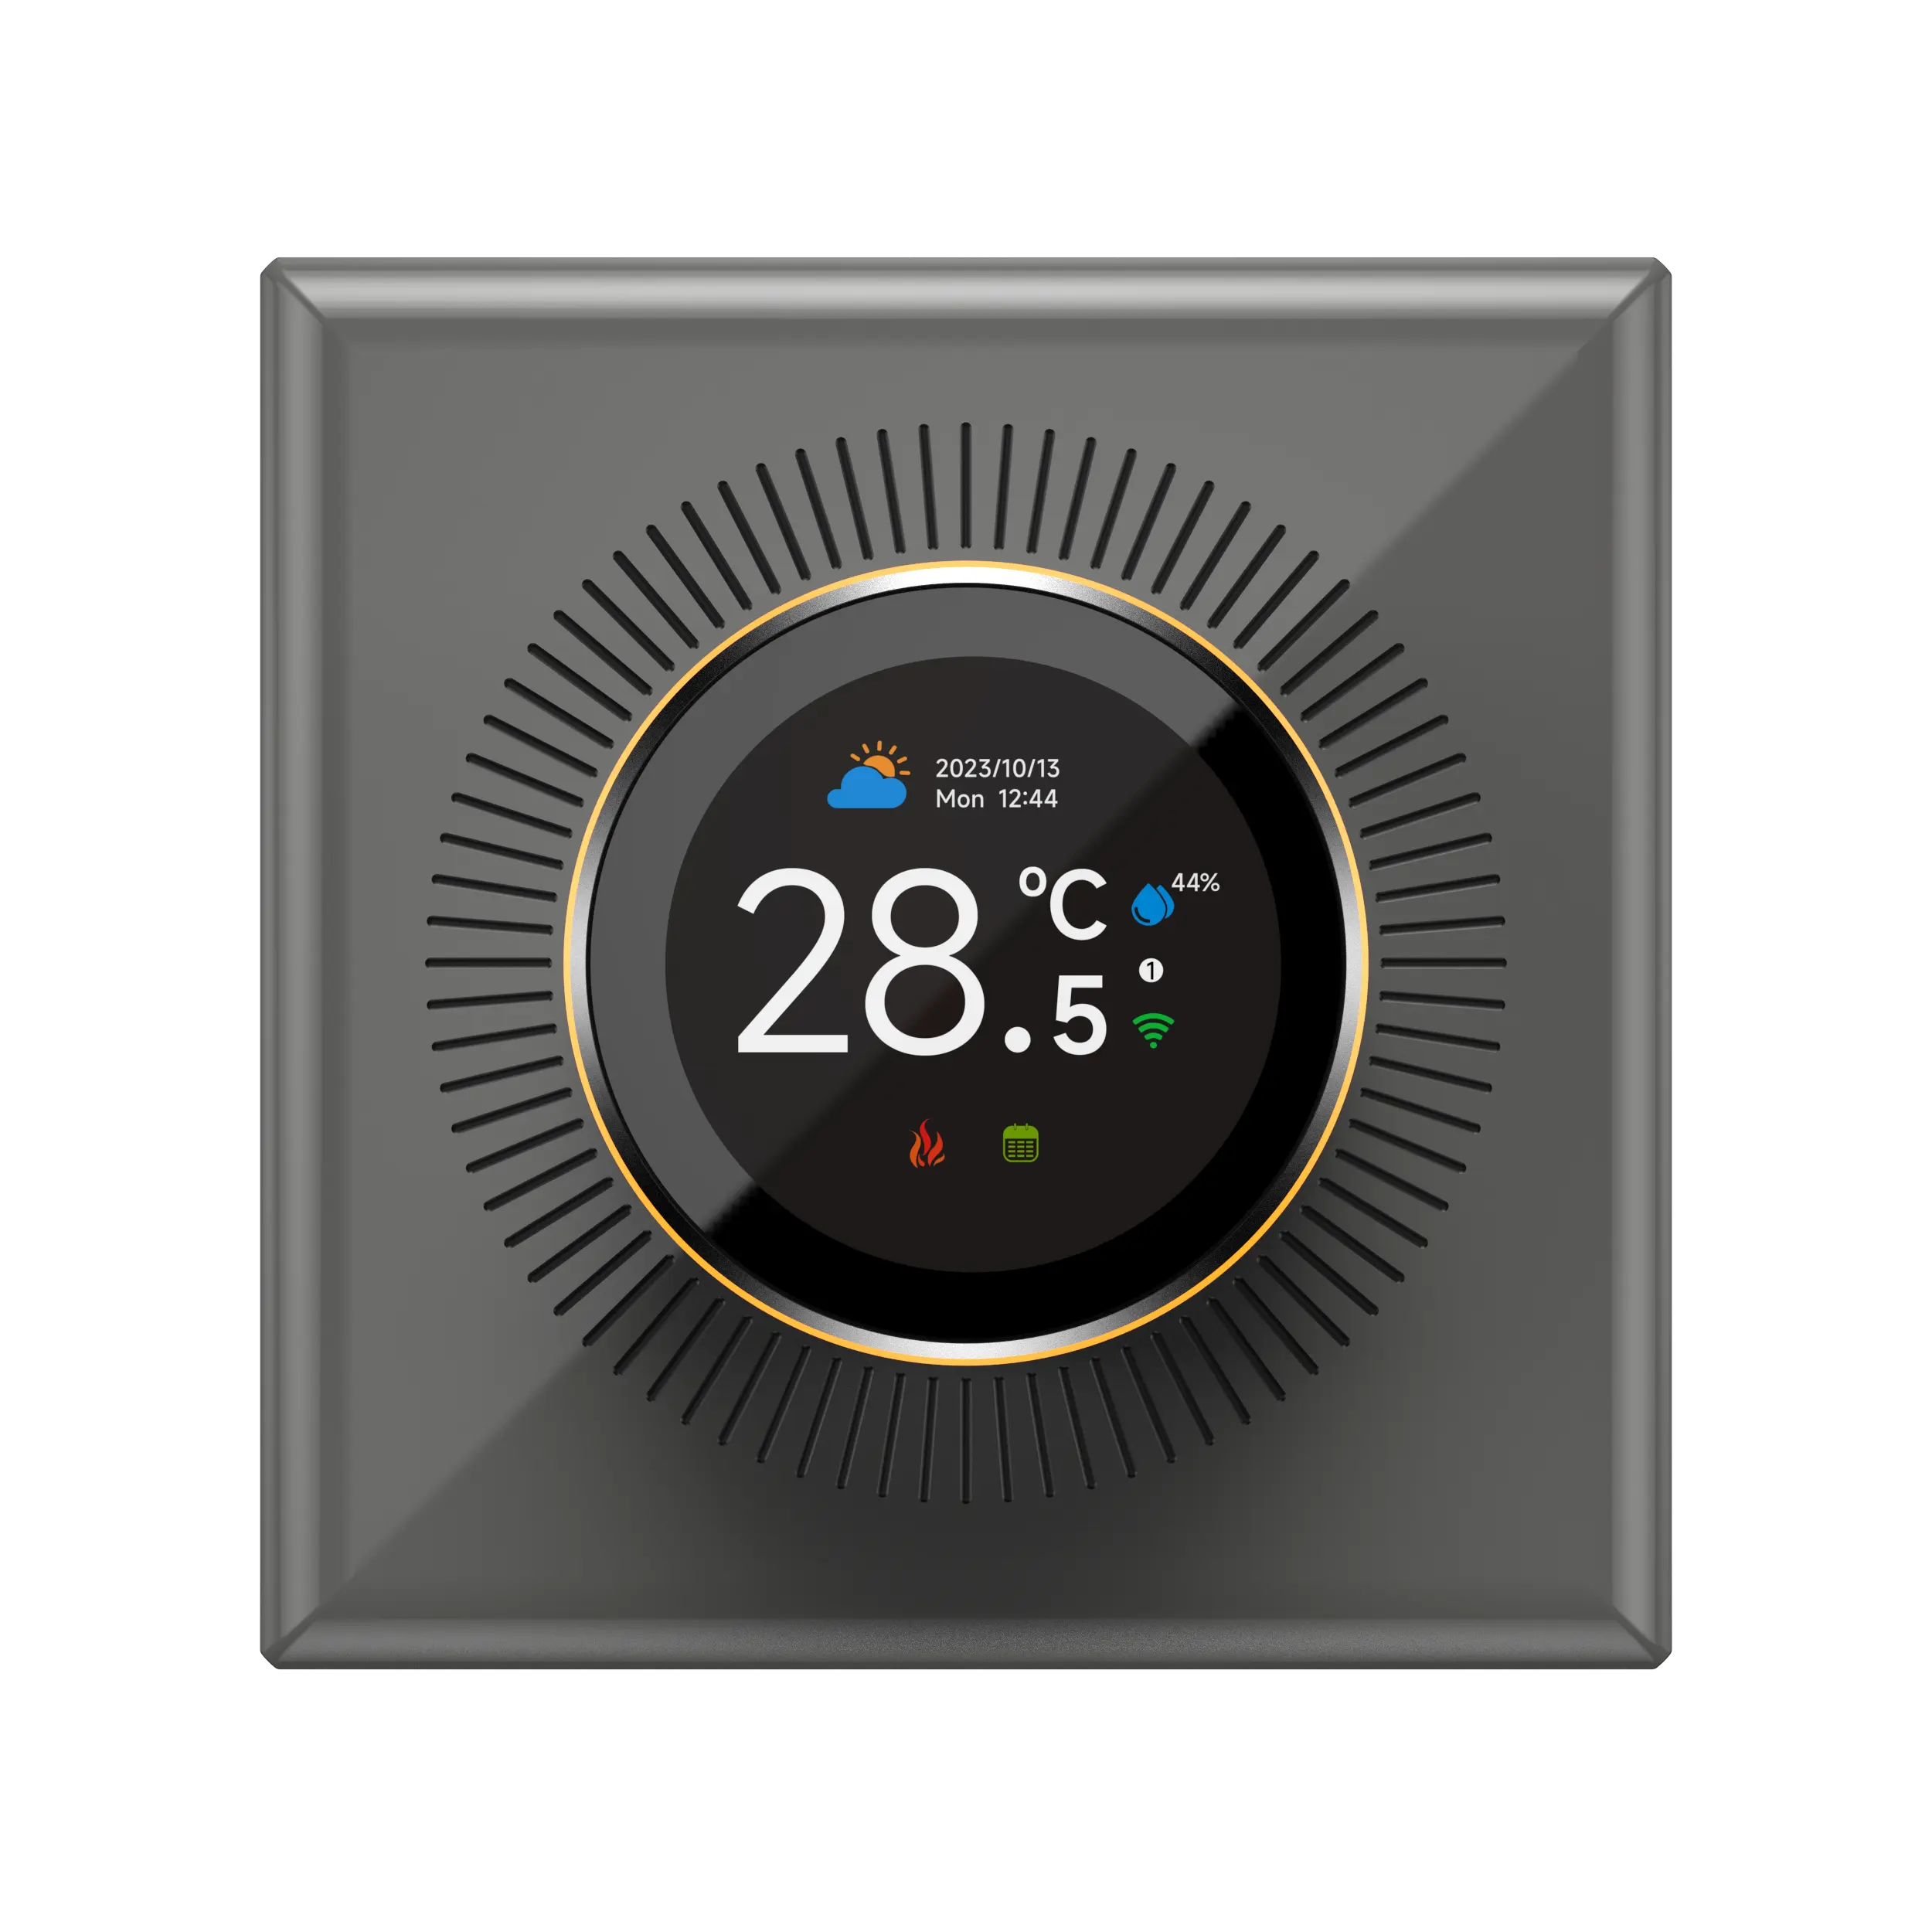 Moderno Smart Hotel in stile digitale manopola termostato con controllo vocale Alexa per riscaldamento a pavimento caldaia a Gas in appartamenti